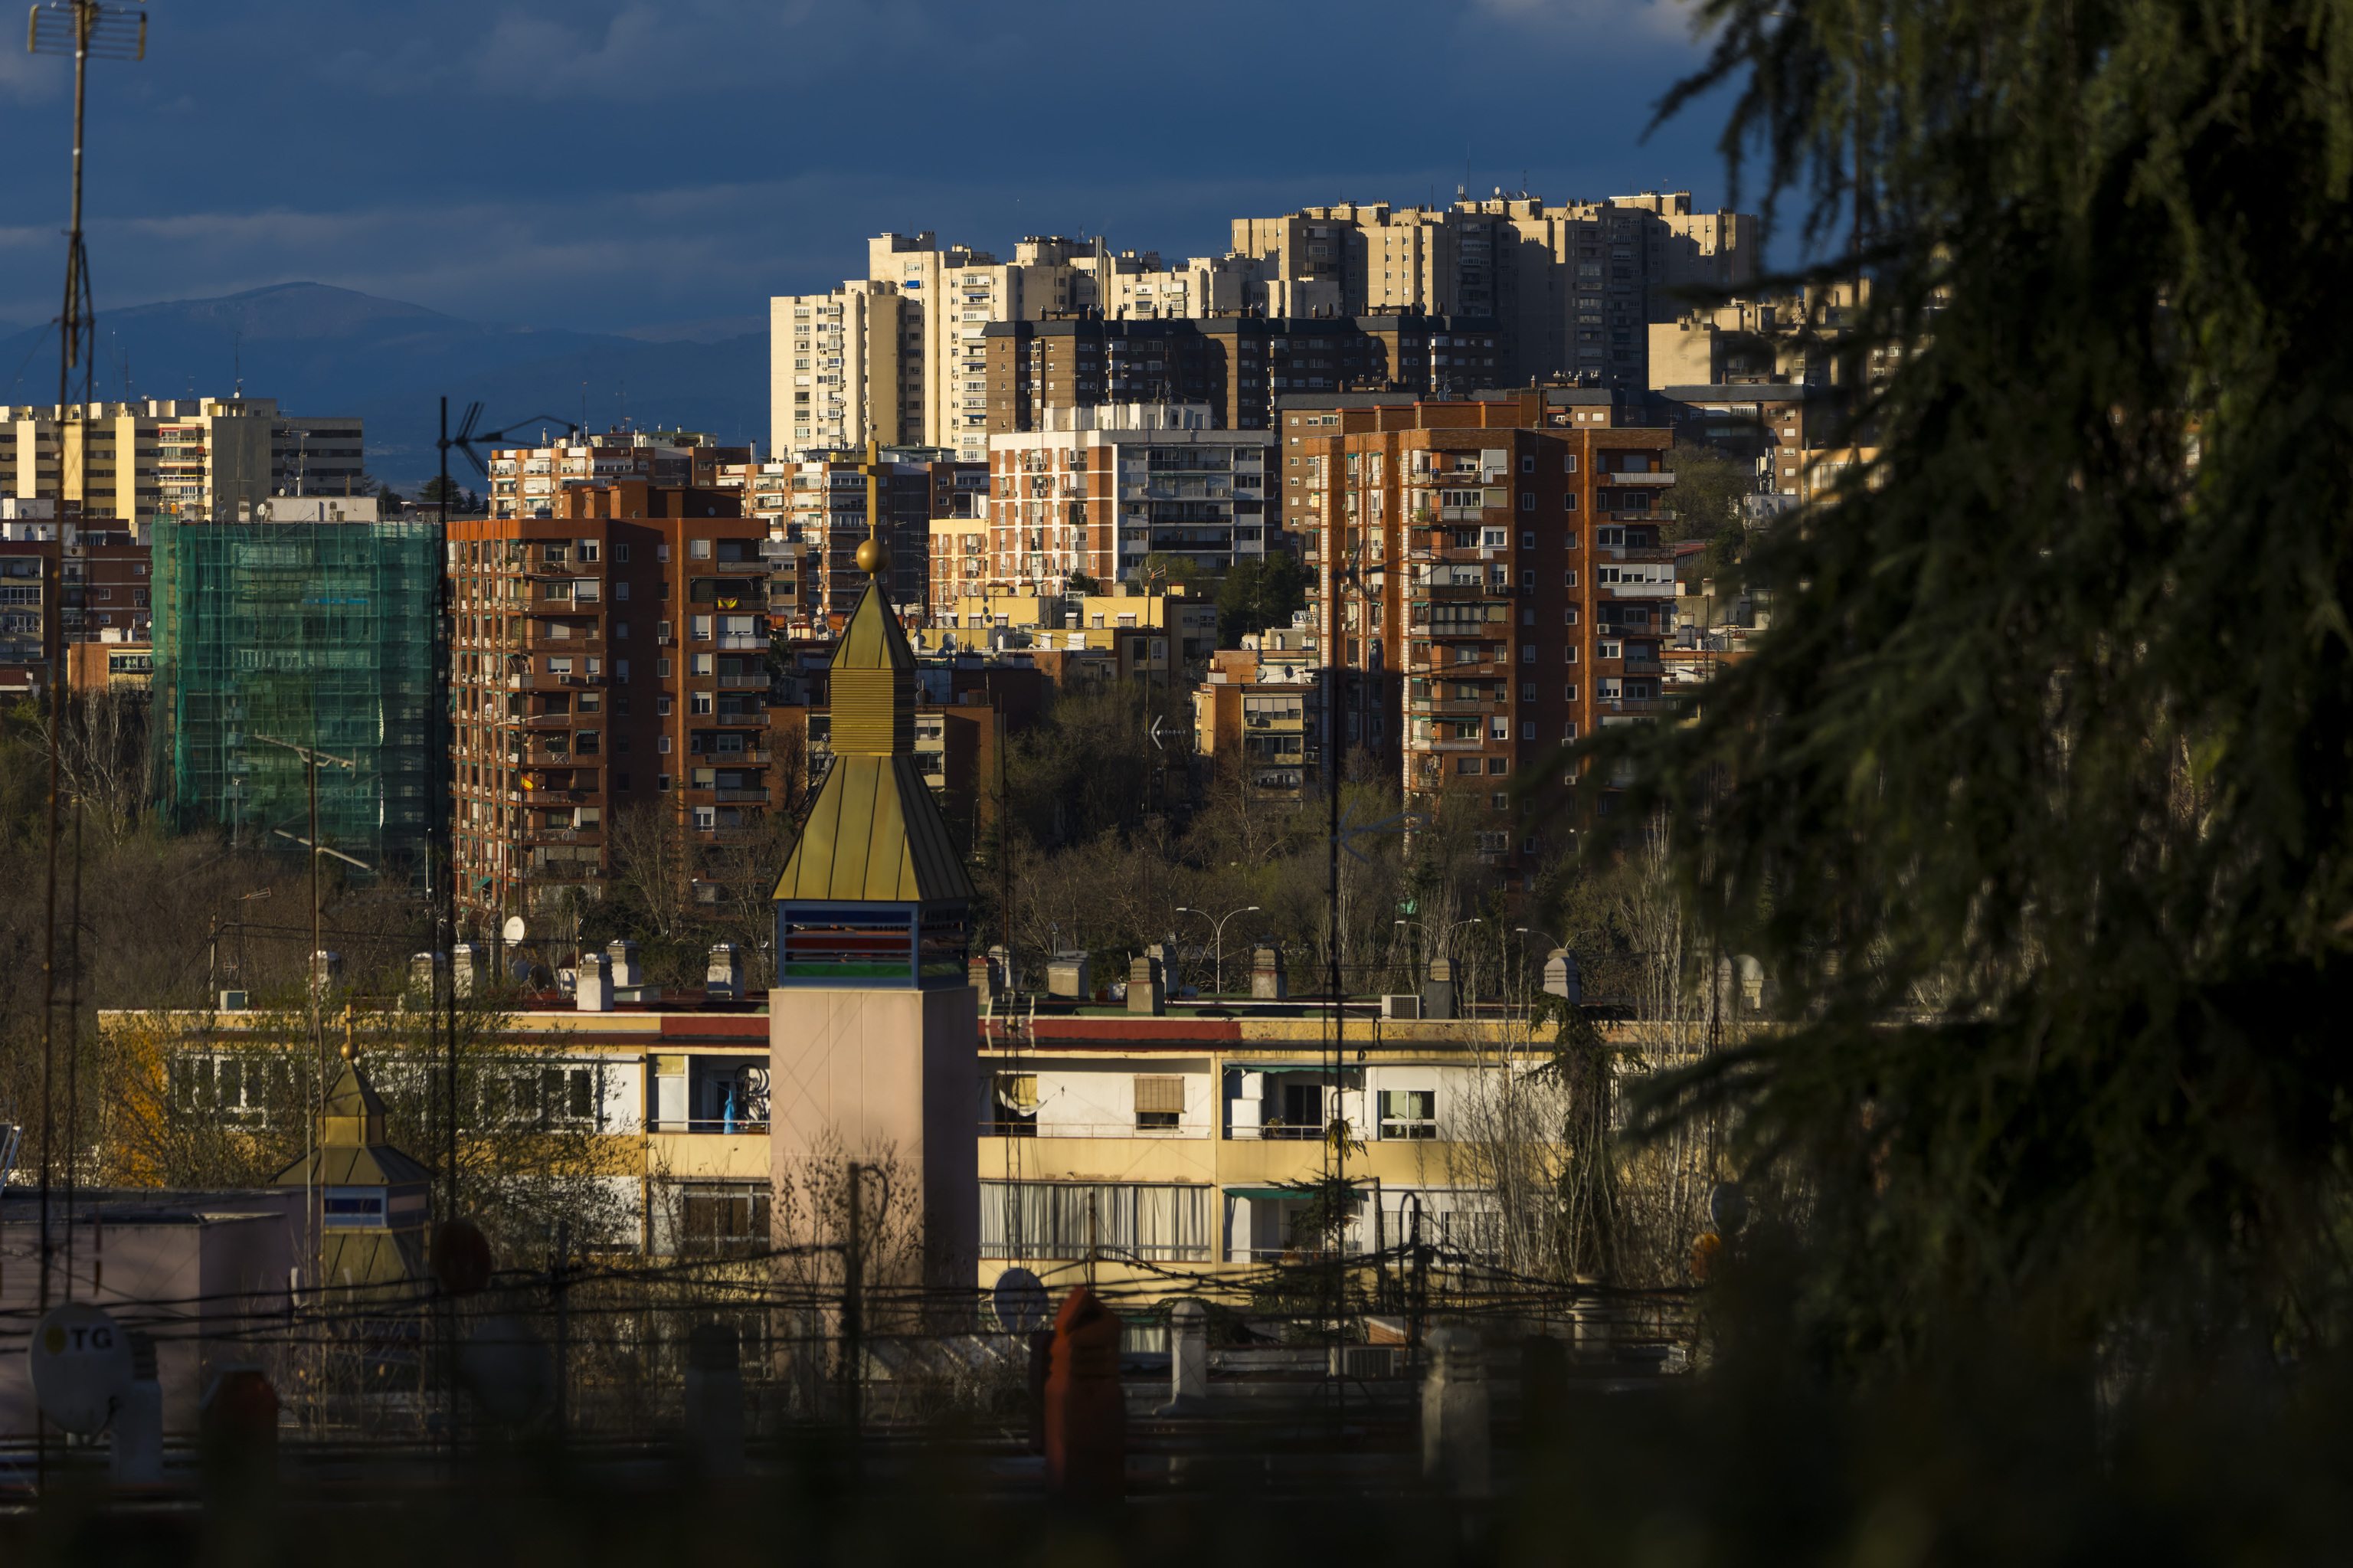 Comprar una vivienda pero esperar a que el propietario fallezca: la nuda propiedad se dispara un 11% en España